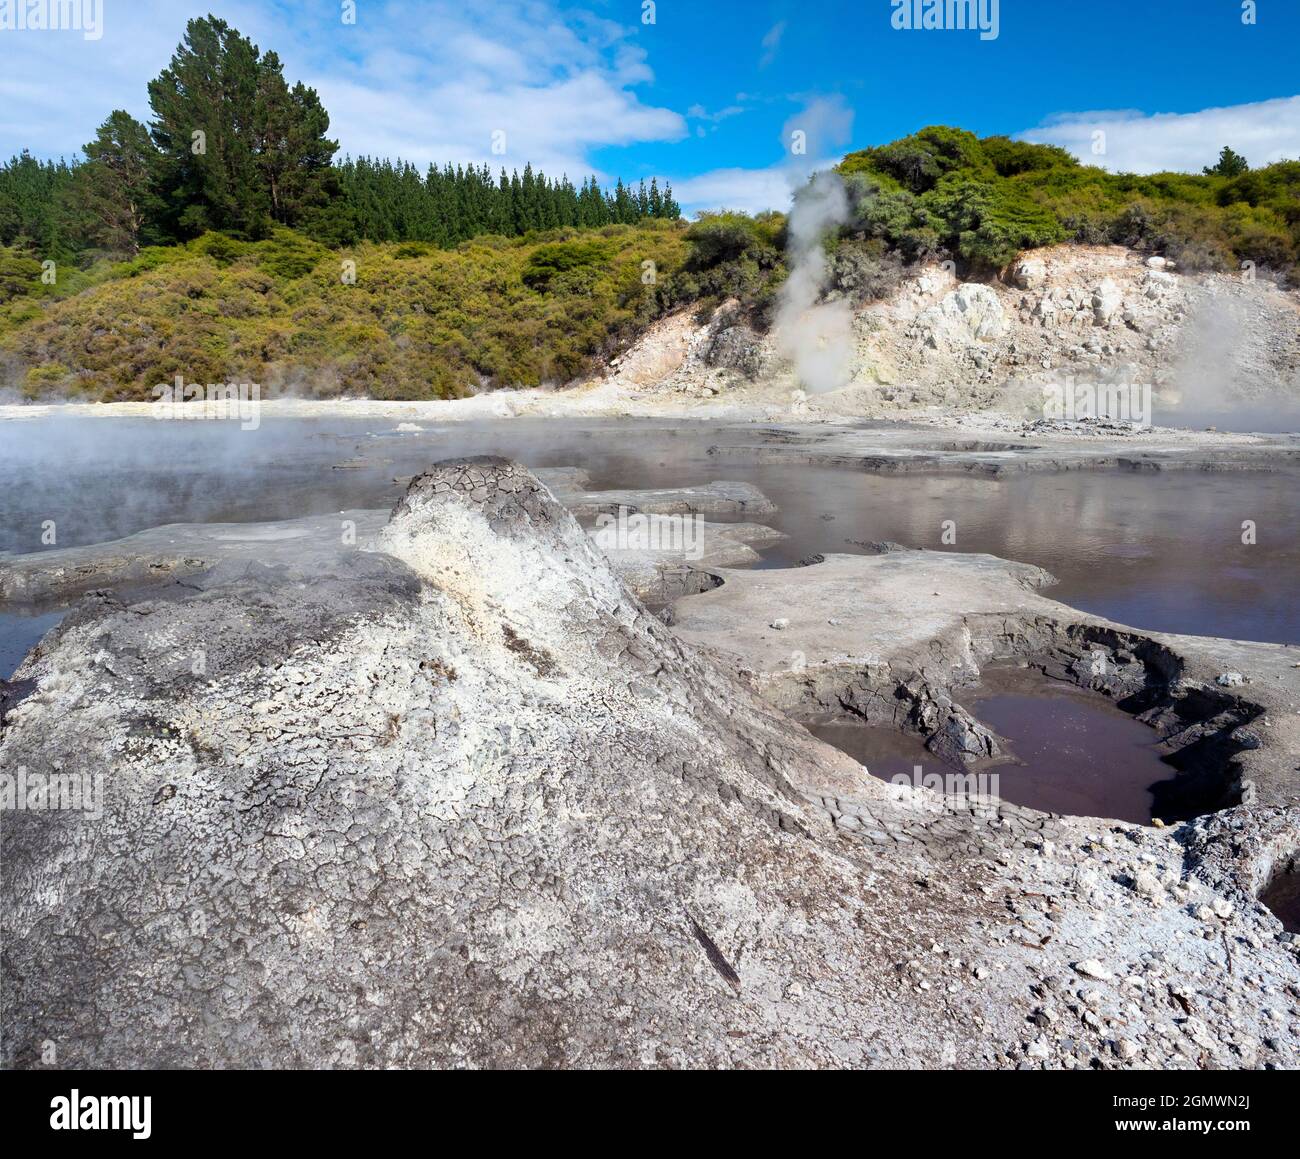 Rotorua, Neuseeland - 1. März 2019; Rotorua auf der neuseeländischen Nordinsel ist ein ausgedehntes Gebiet mit geothermischen Quellen, kochenden Schlammquellen und Su Stockfoto